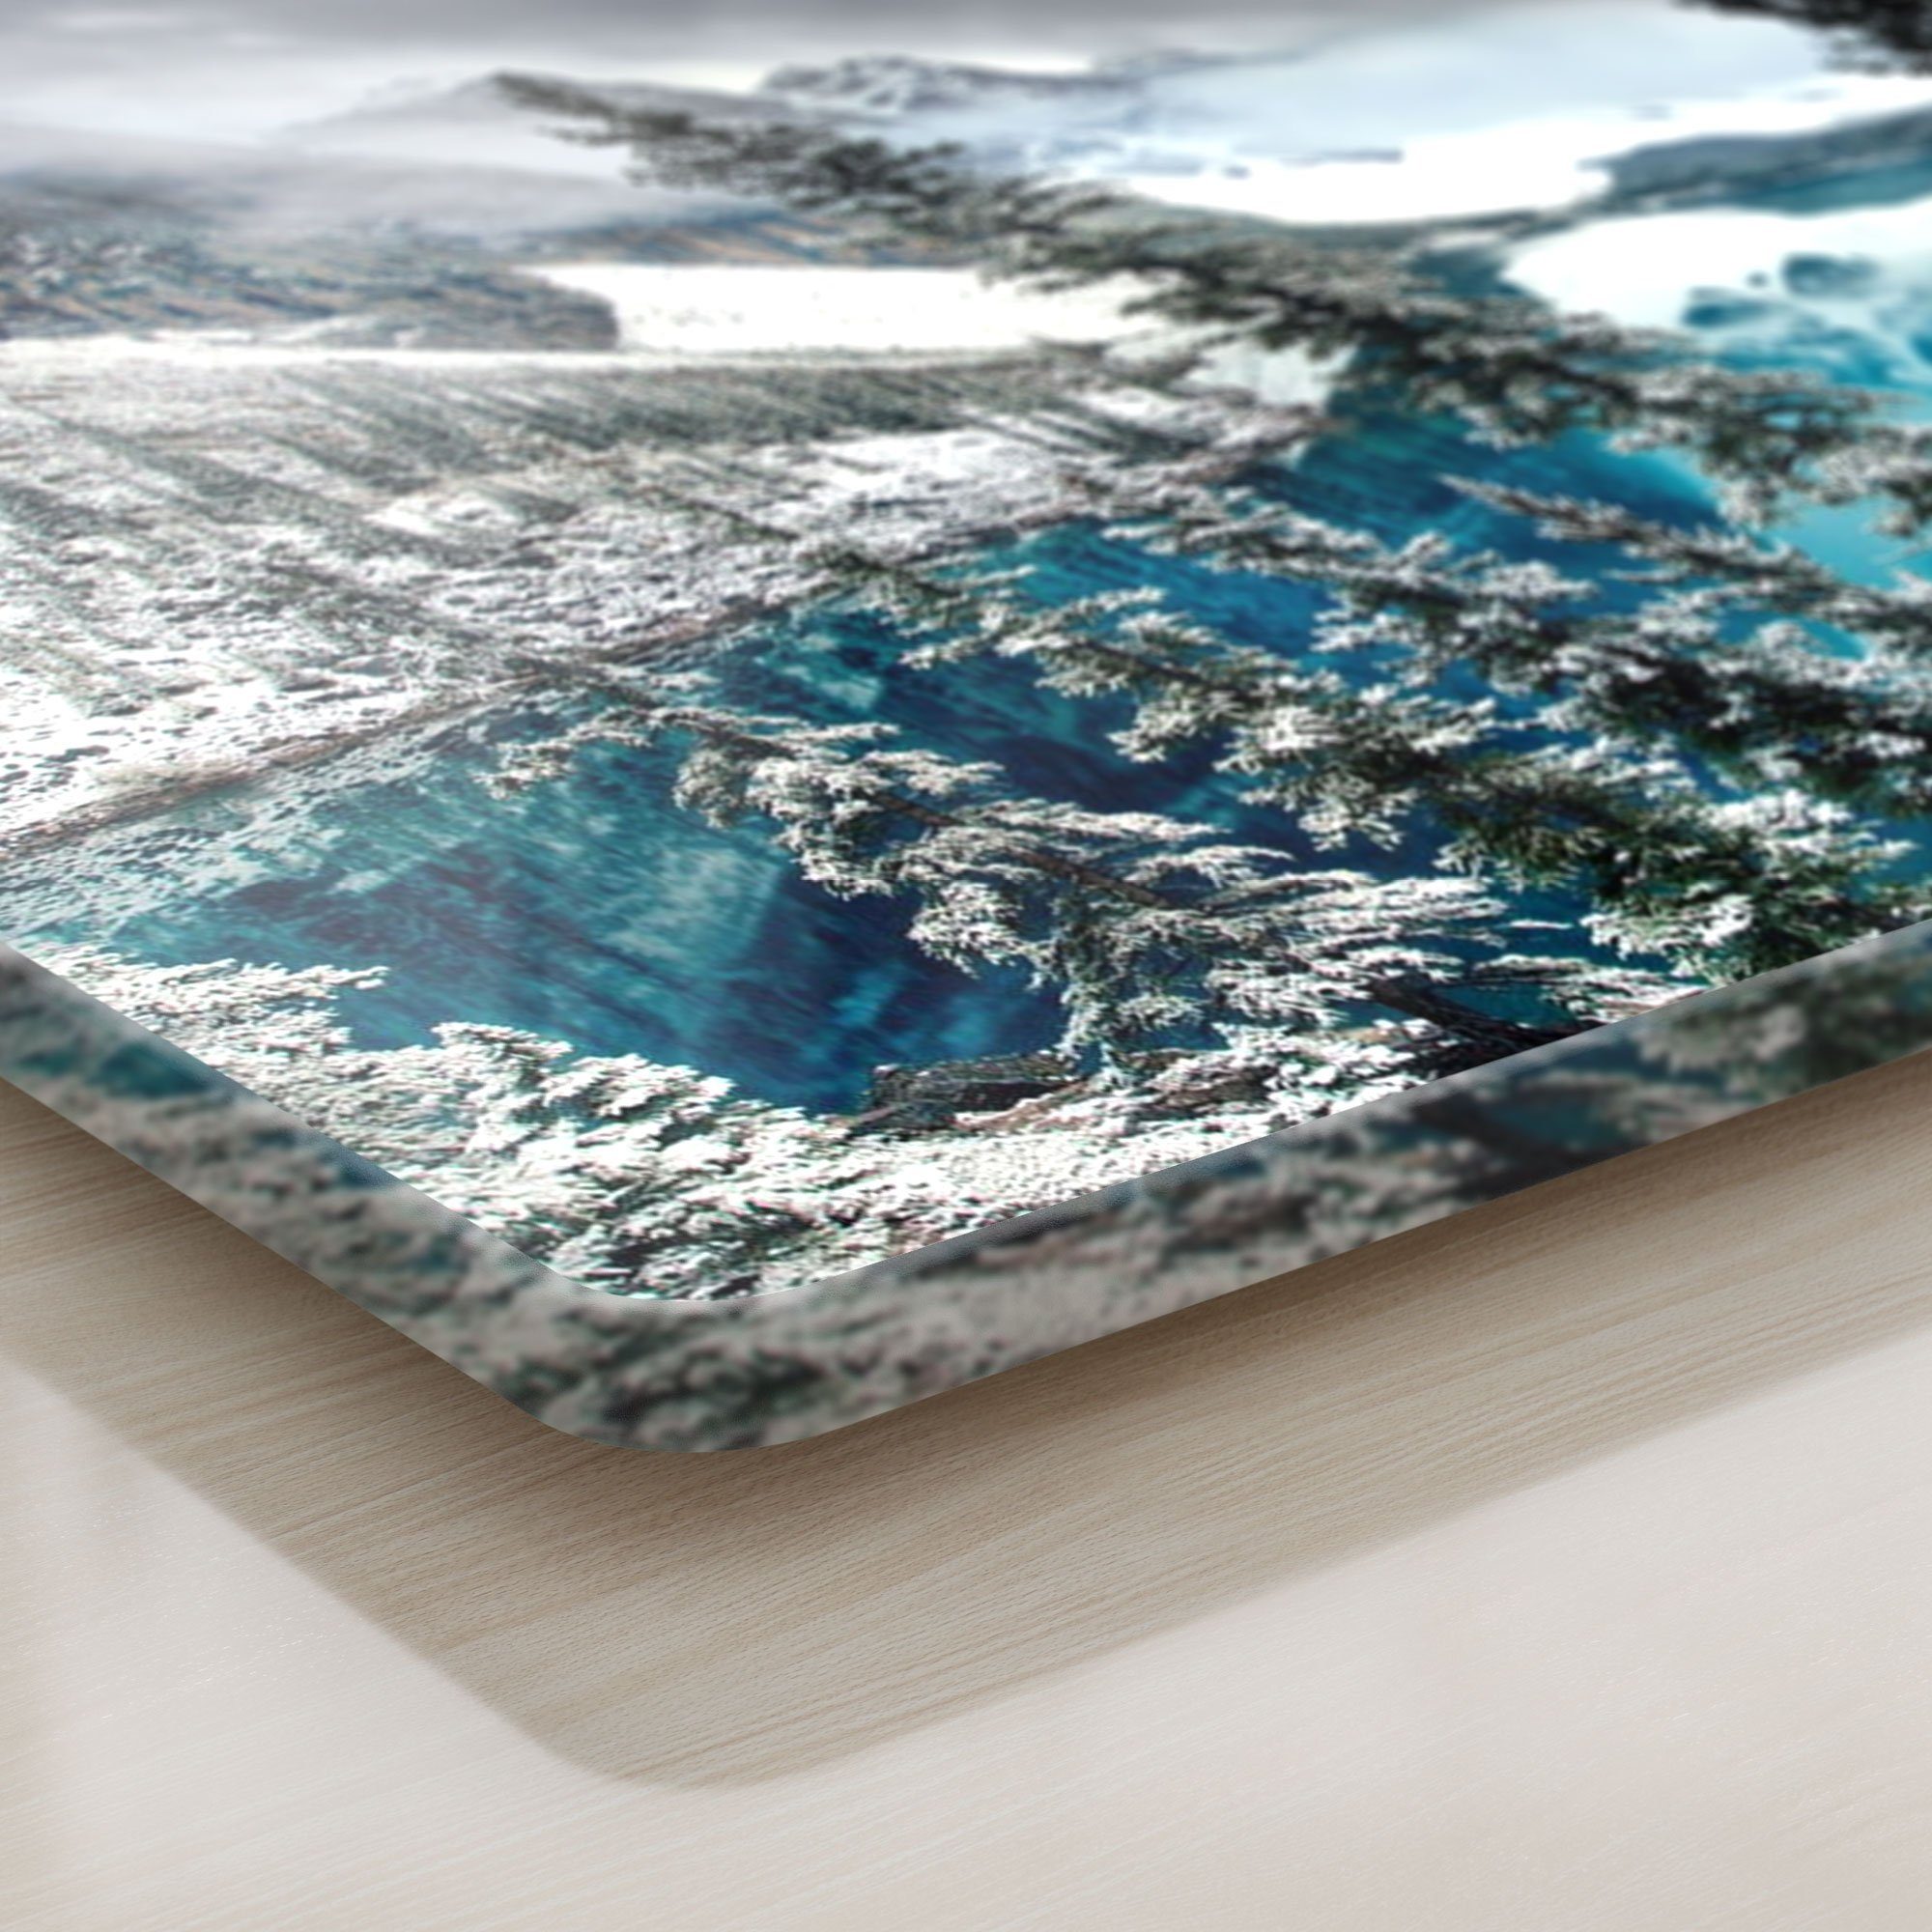 'Moraine Frühstücksbrett Platte im Schneidebrett Schneideplatte DEQORI Glas, Winter', See